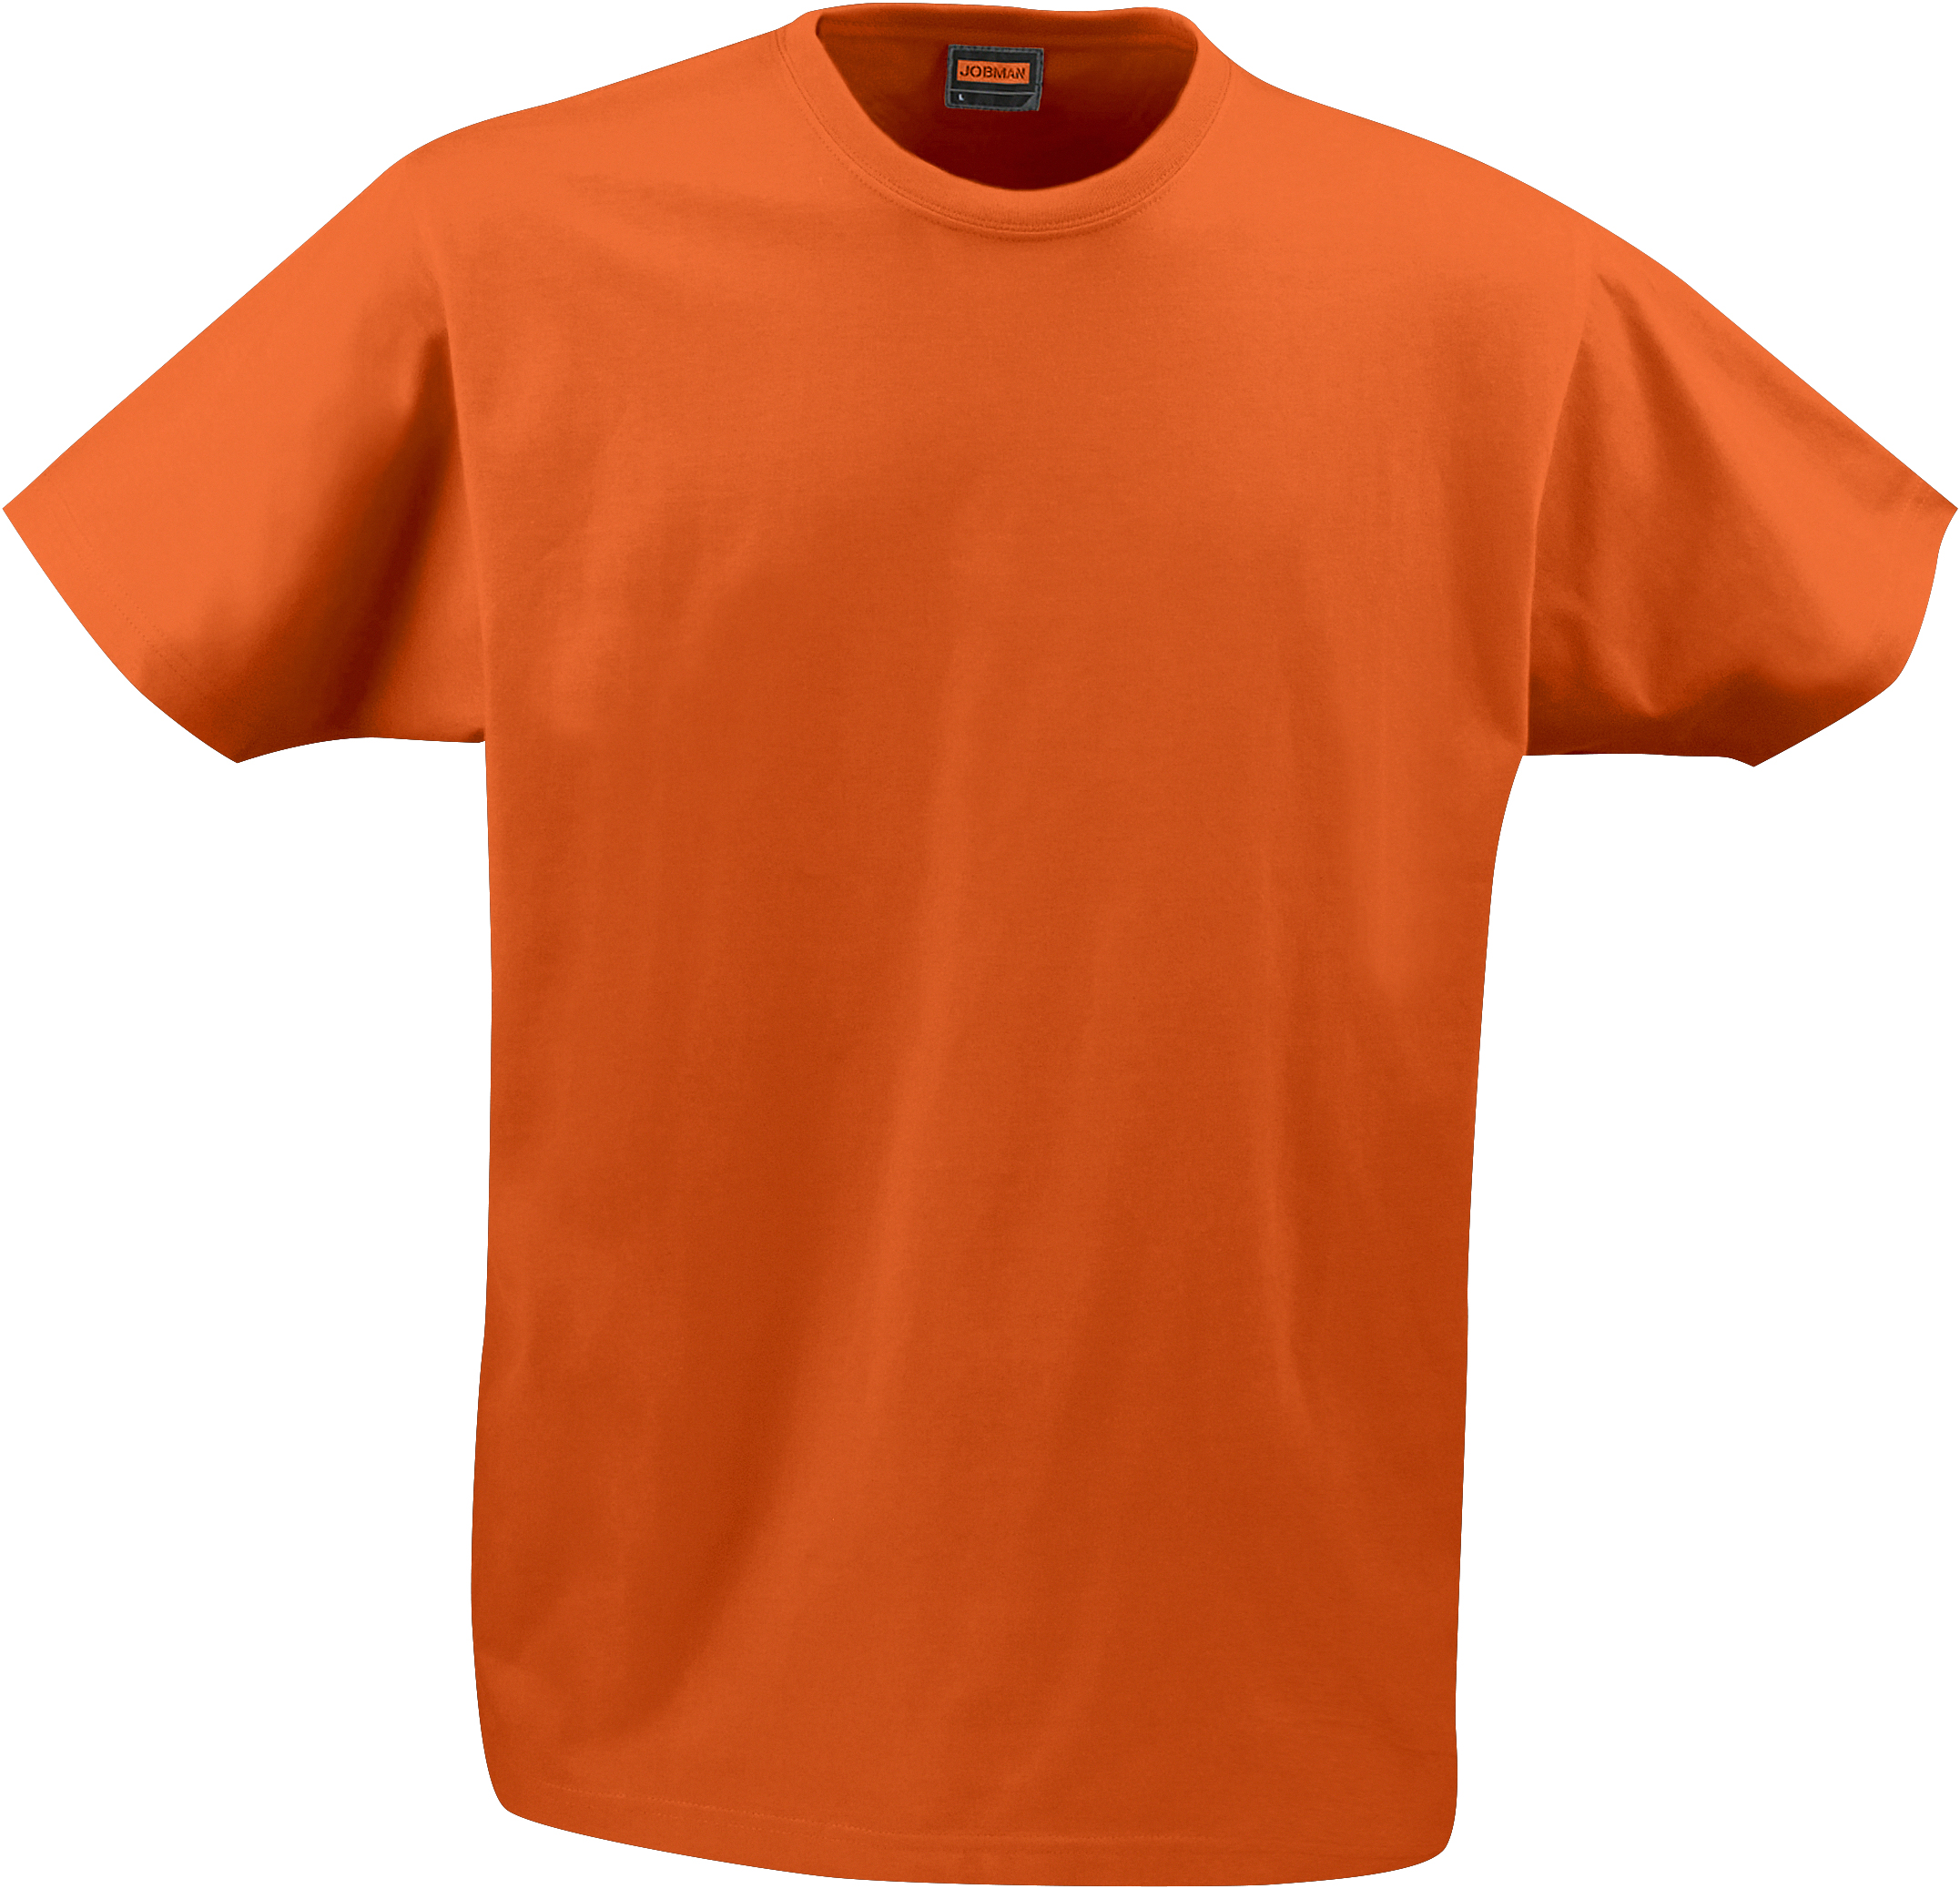 5264 T-SHIRT HOMME S orange